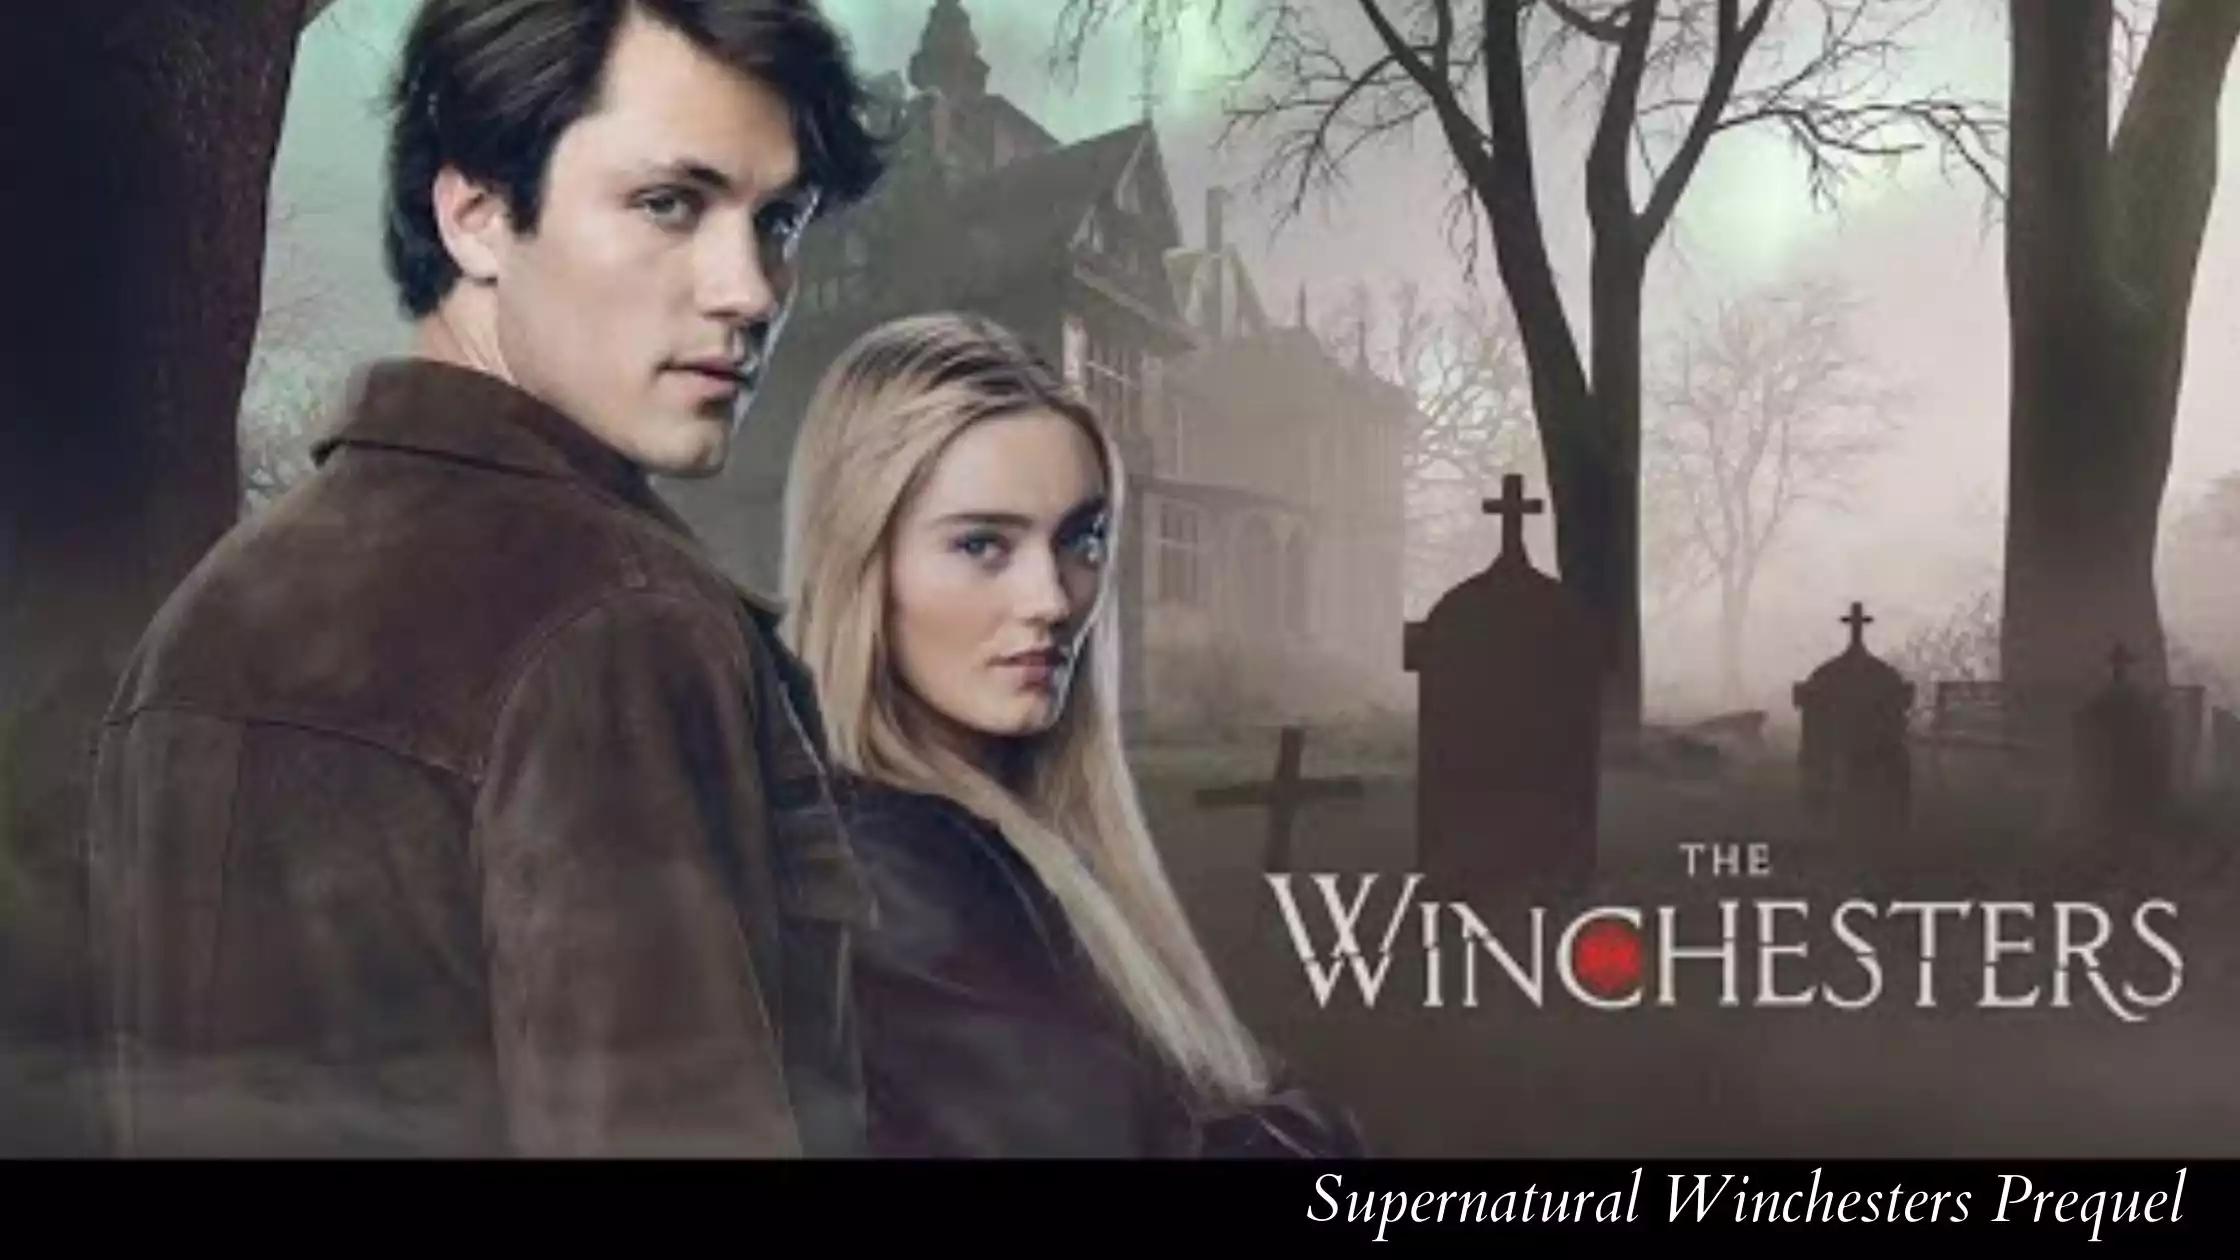 Supernatural Winchesters Prequel Release date